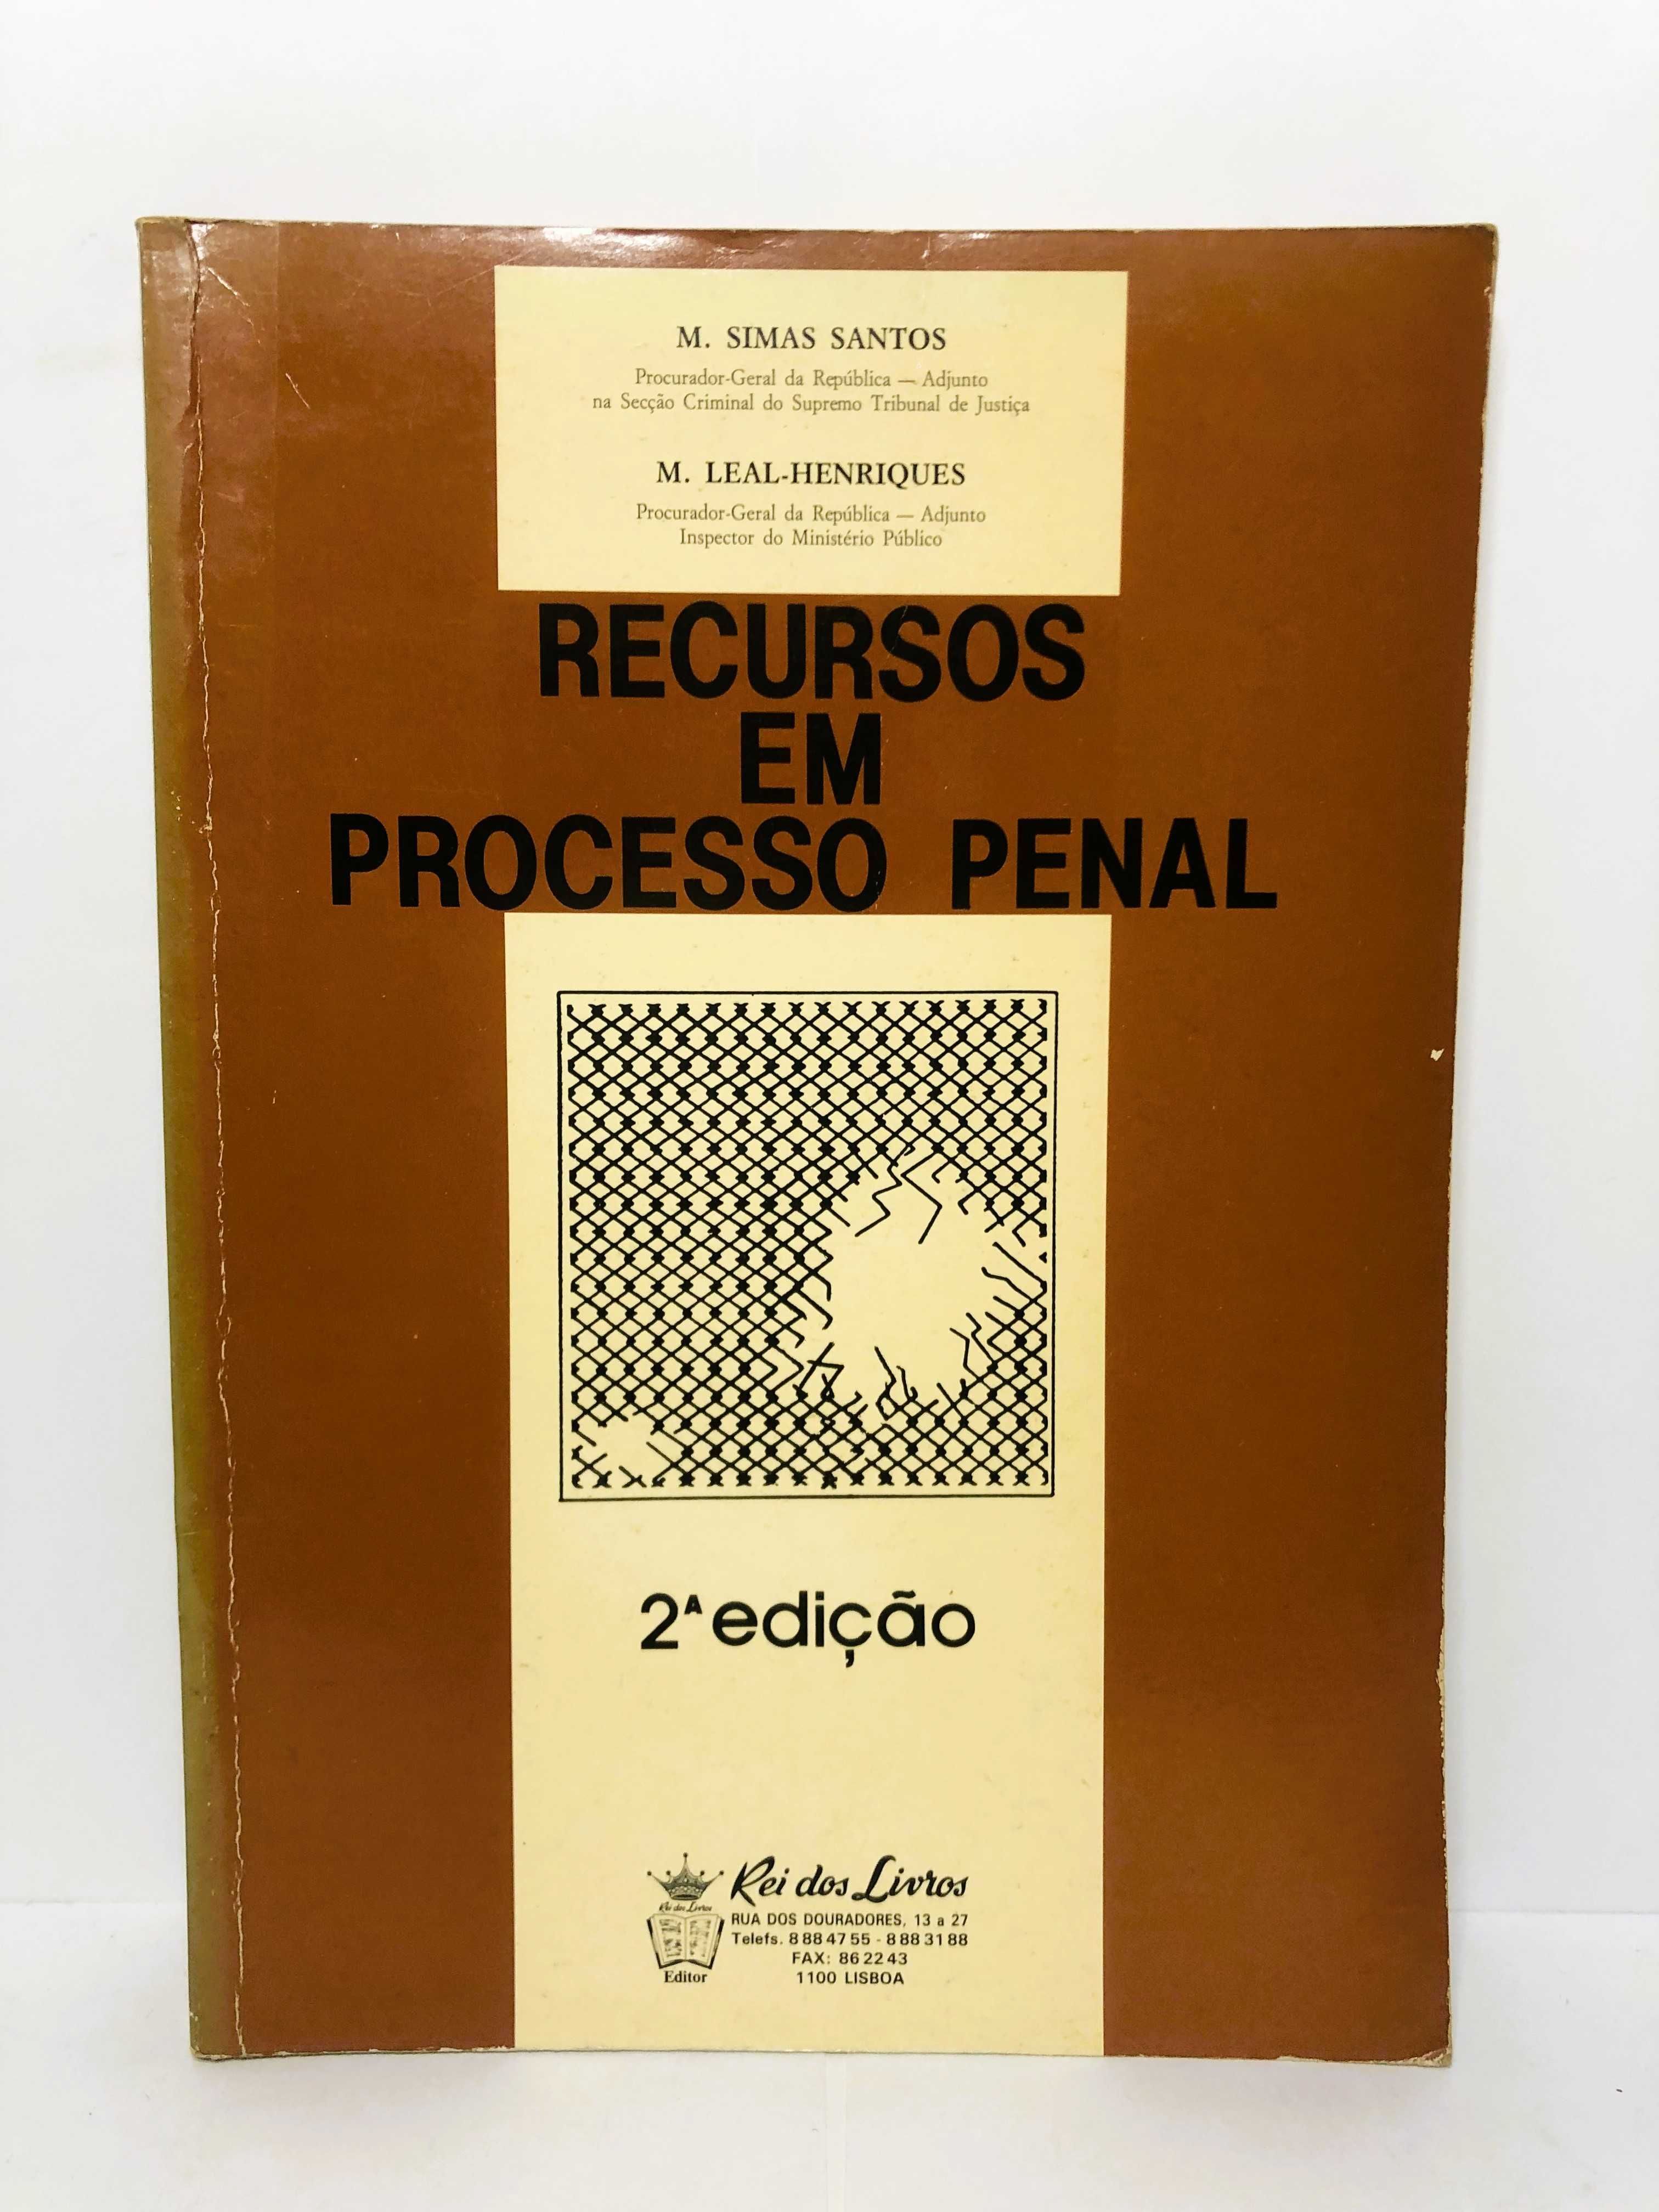 Recursos Penais em Processo Penal 2a Edição - Manuel Simas Santos